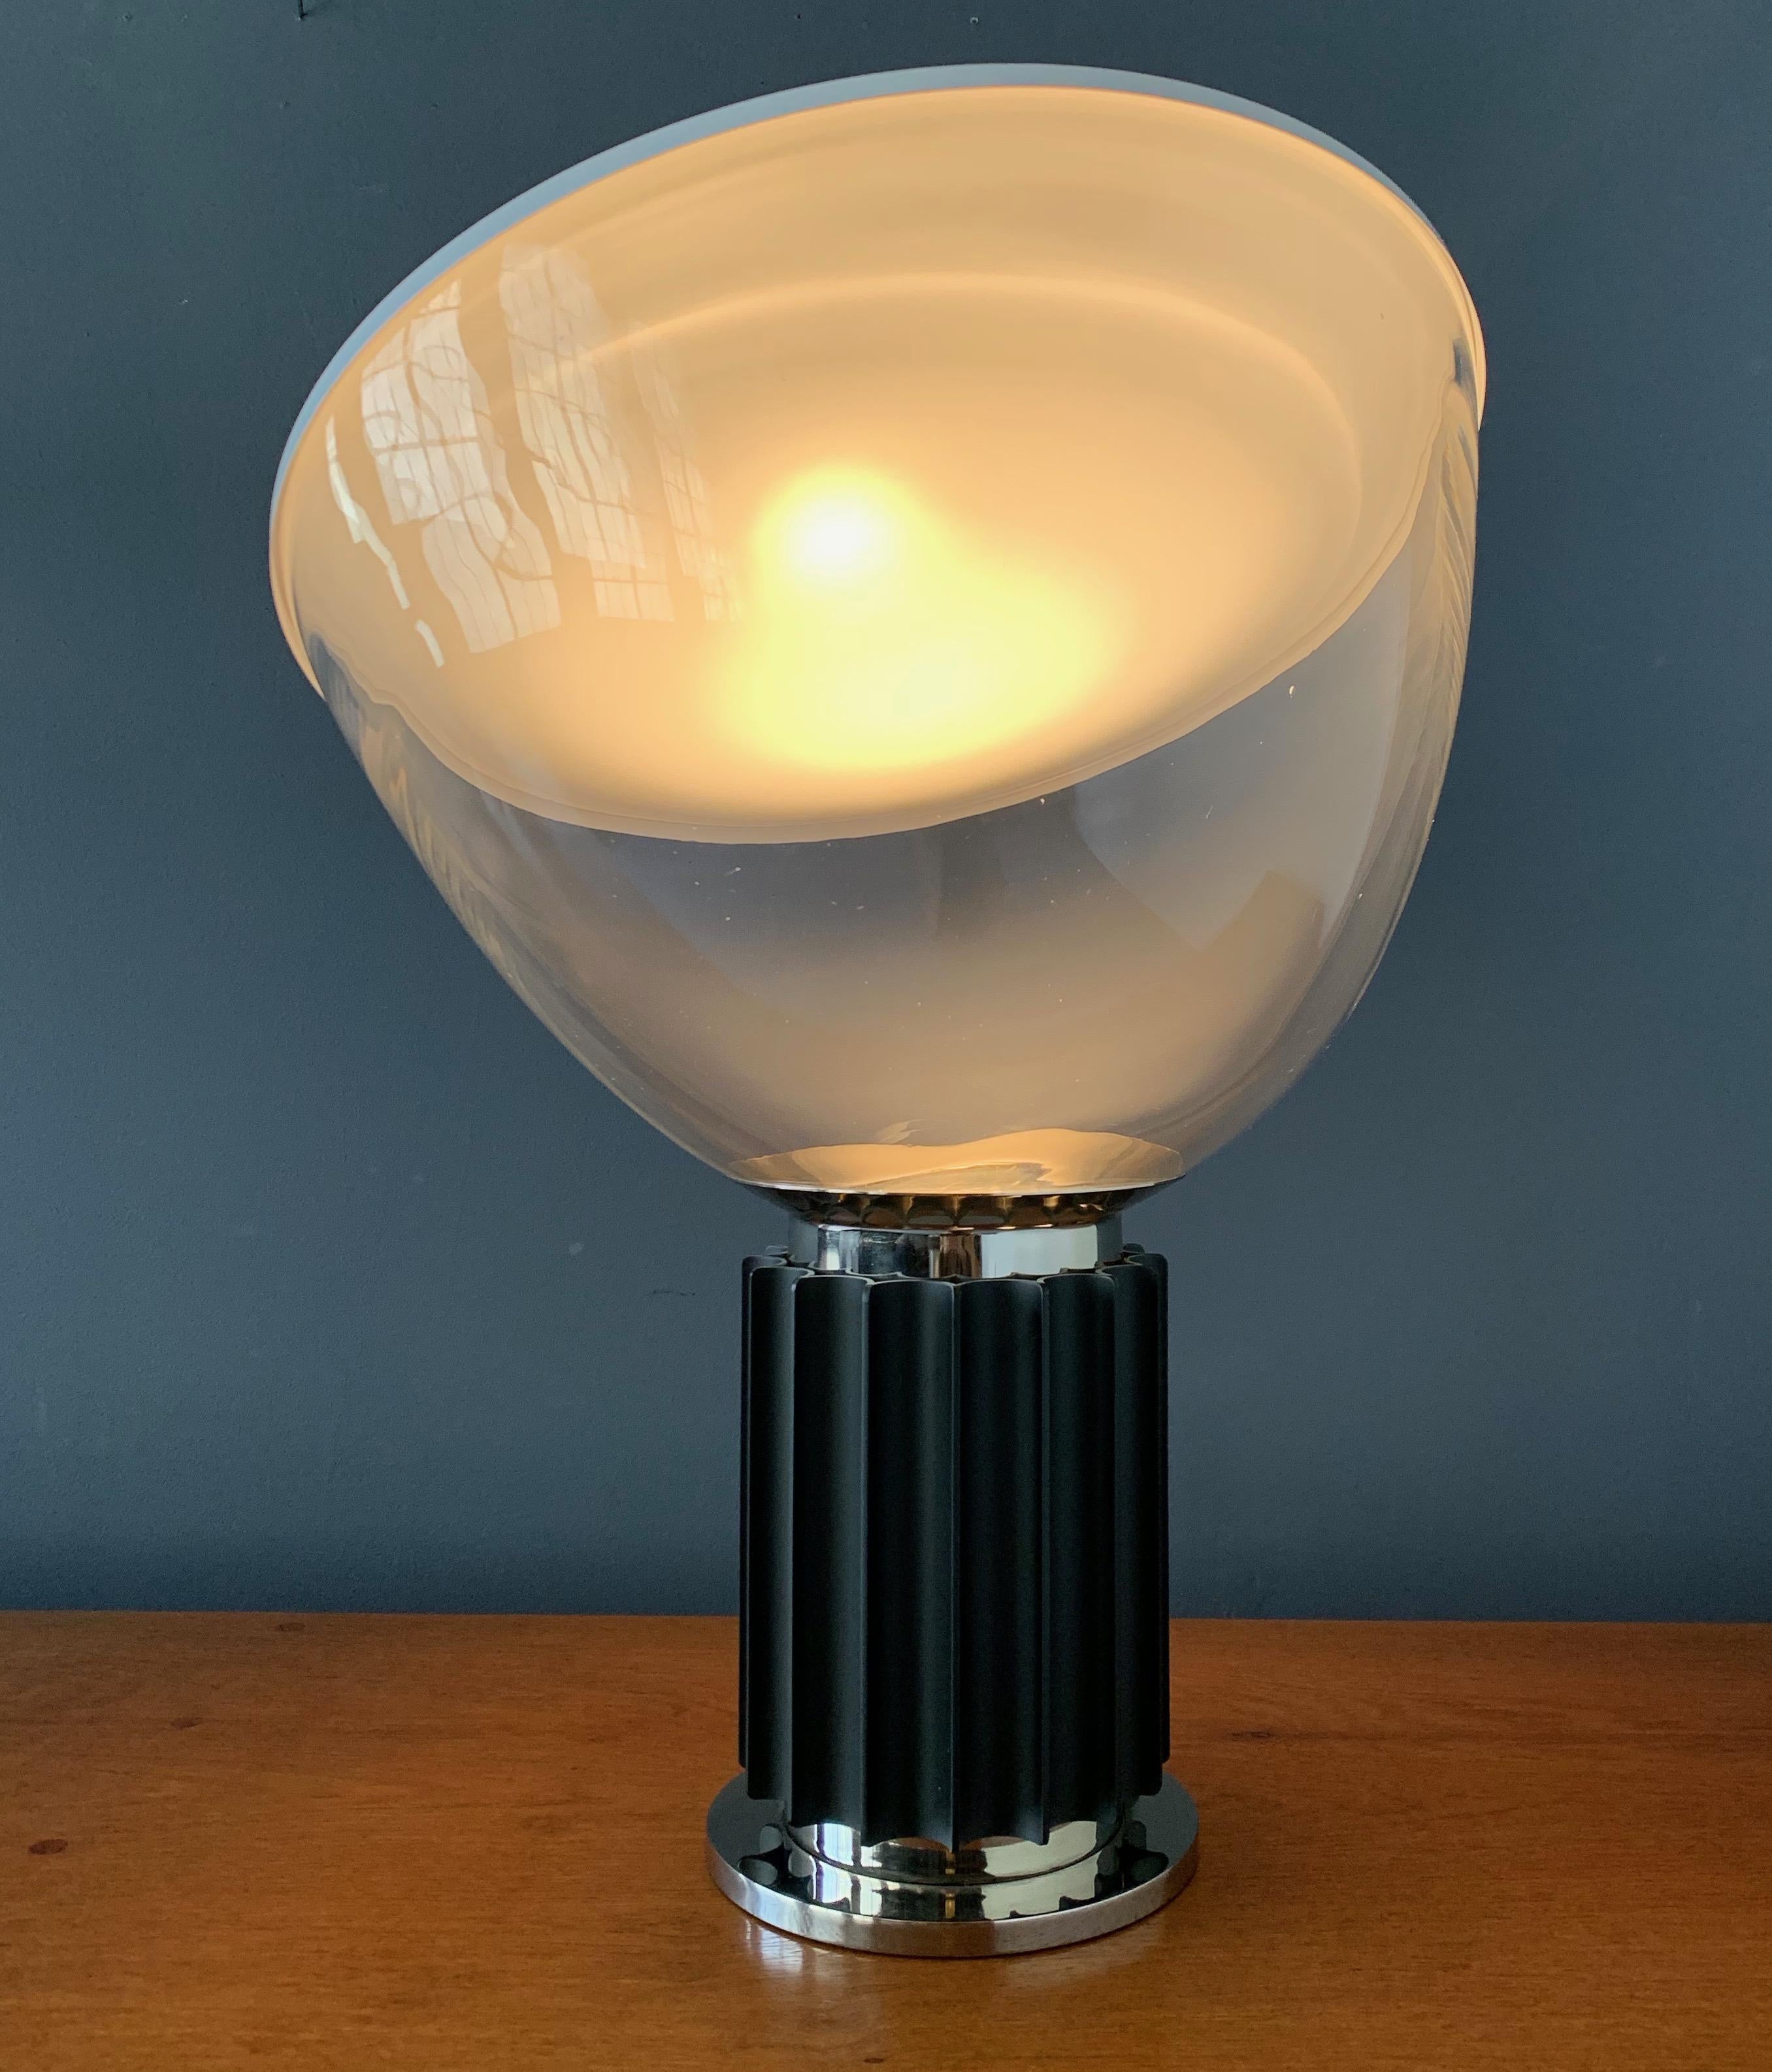 Blown Glass Taccia Table Lamp Designed by Achille Castiglioni for Flos